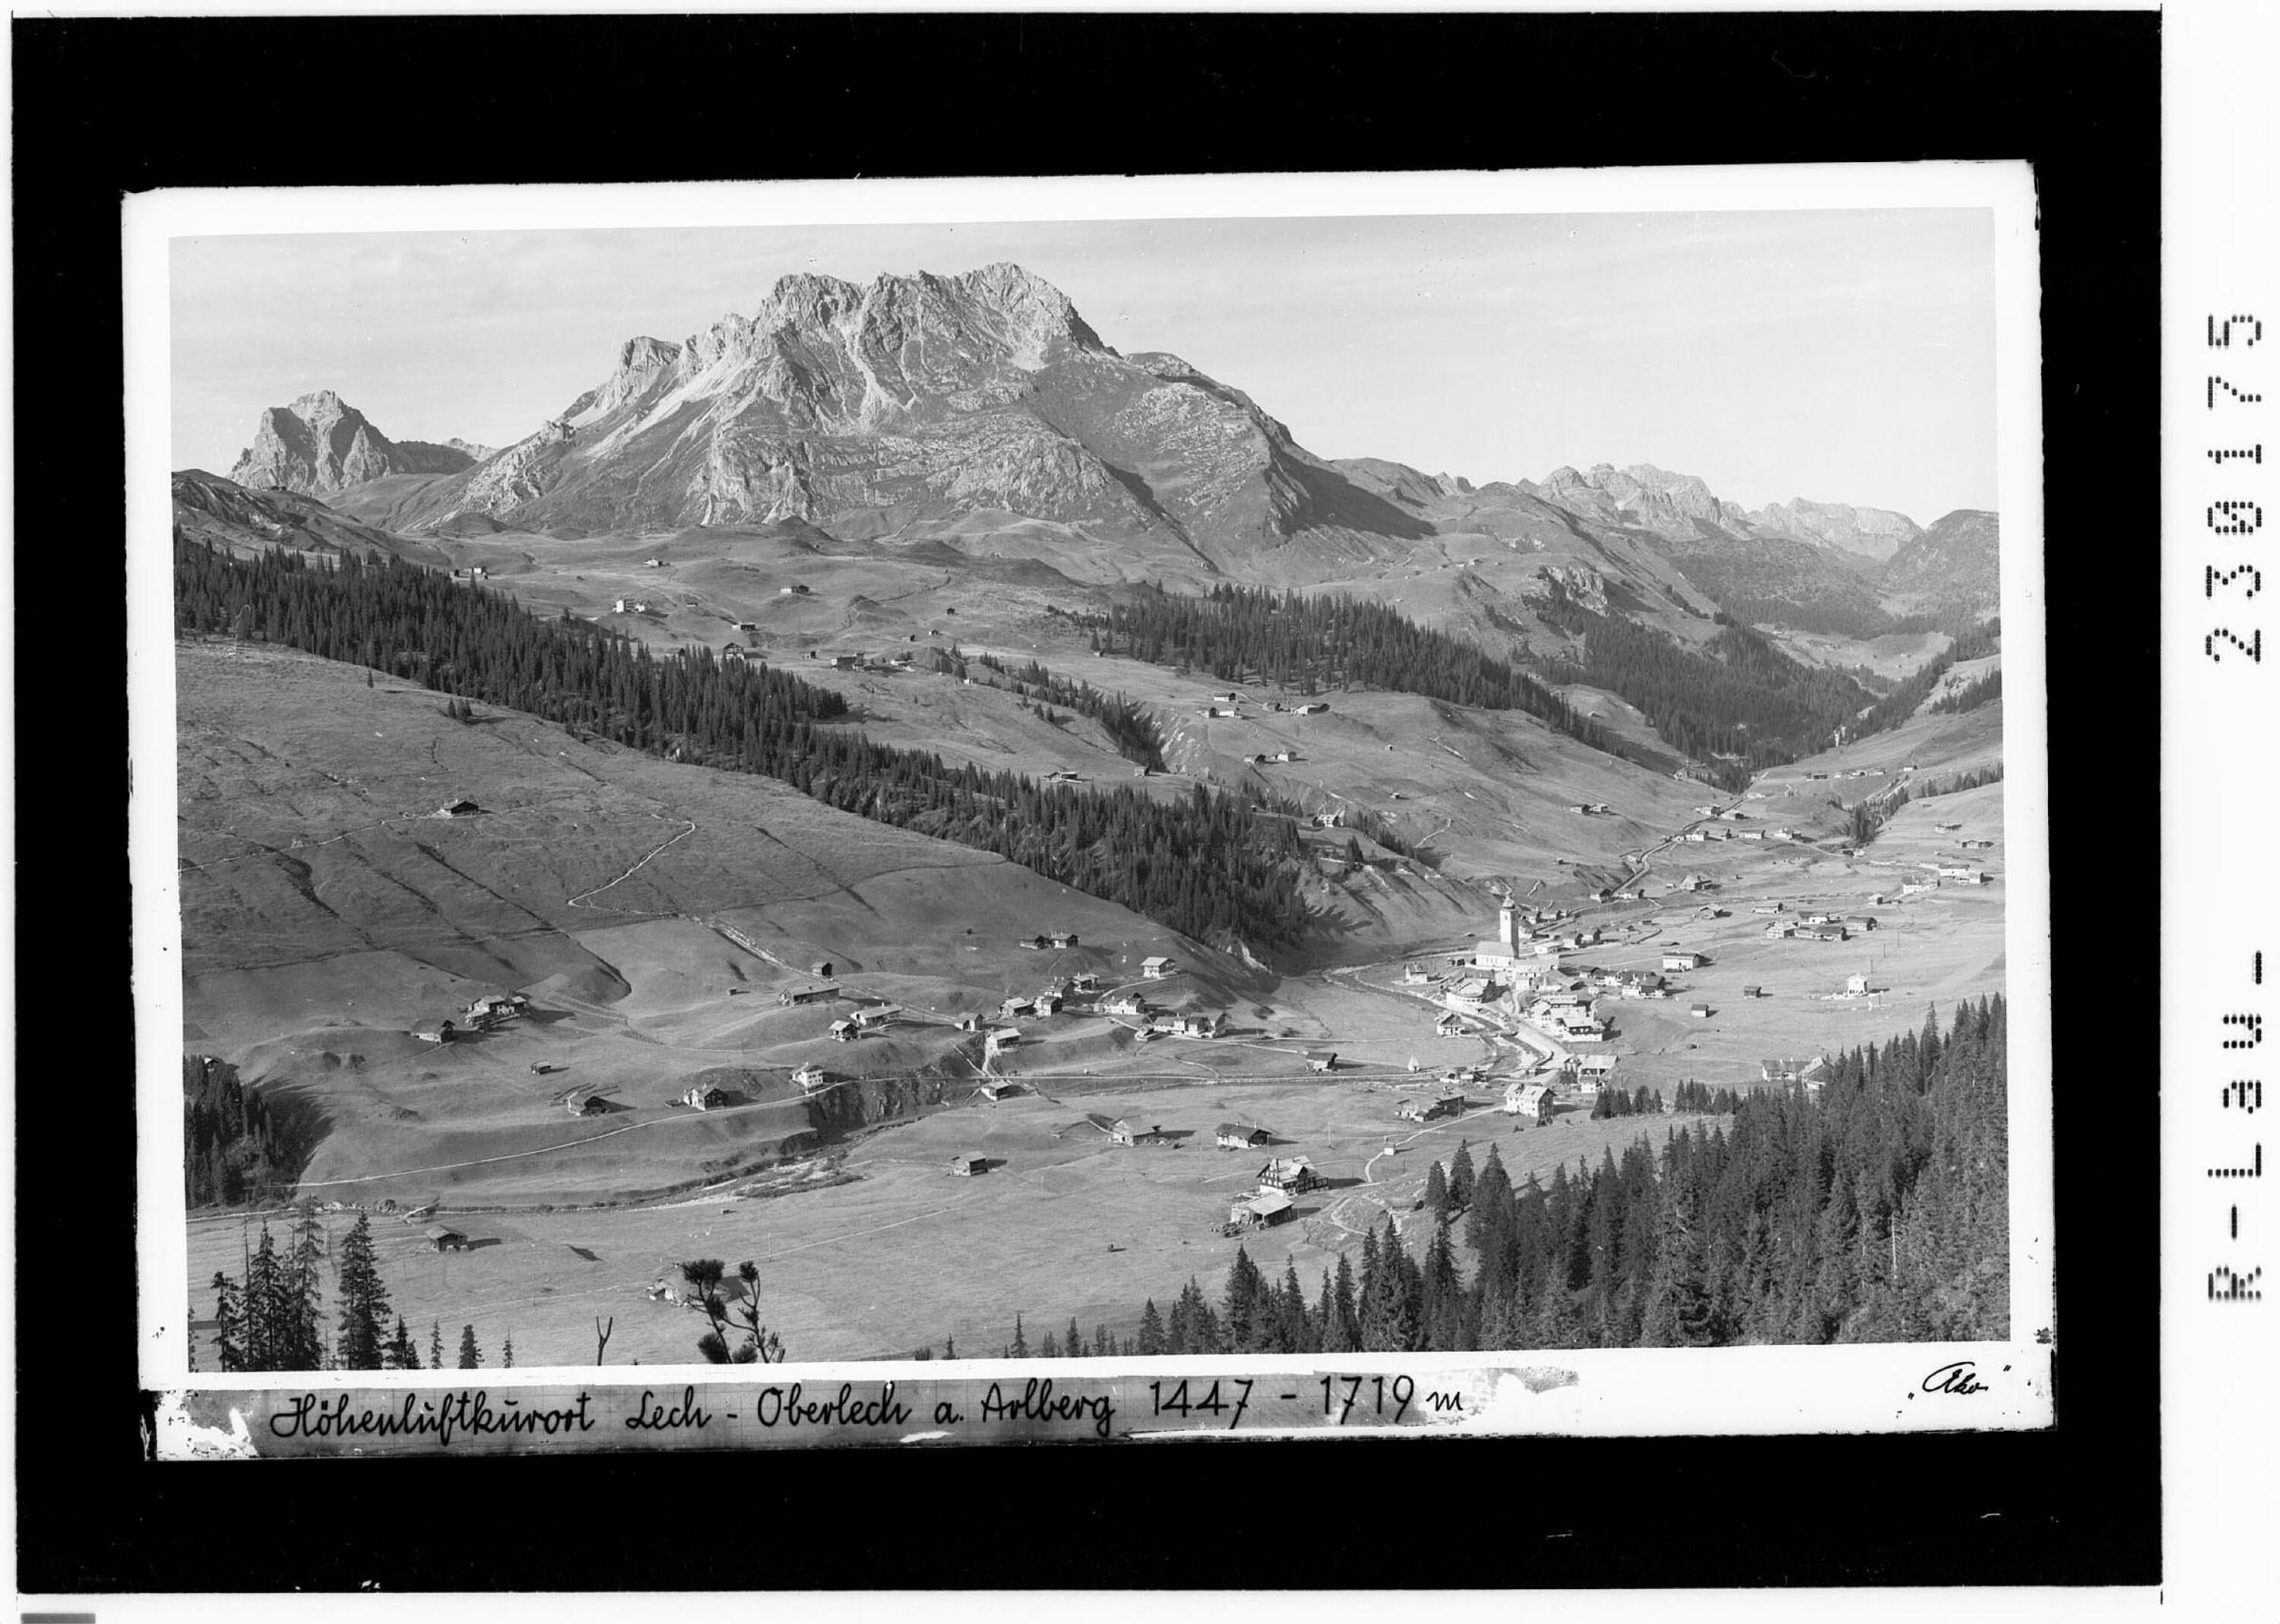 Höhenluftkurort Lech - Oberlech am Arlberg 1447 - 1719 m></div>


    <hr>
    <div class=